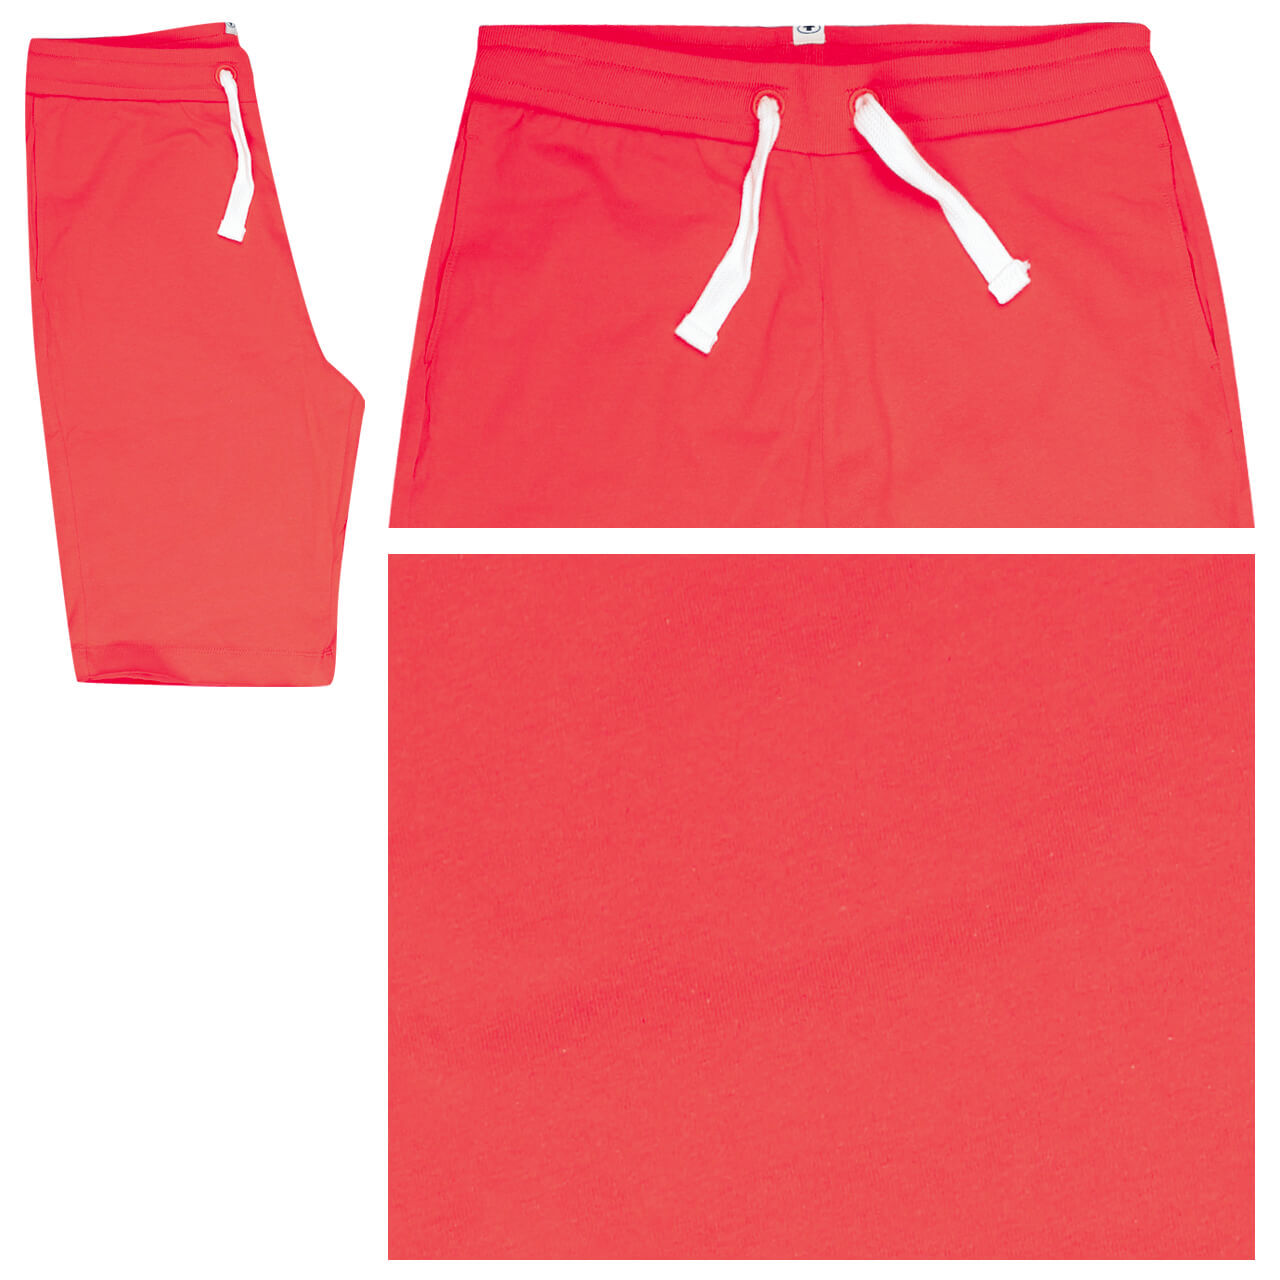 Tom Tailor Sweatpants Shorts für Herren in Rot, FarbNr.: 10524